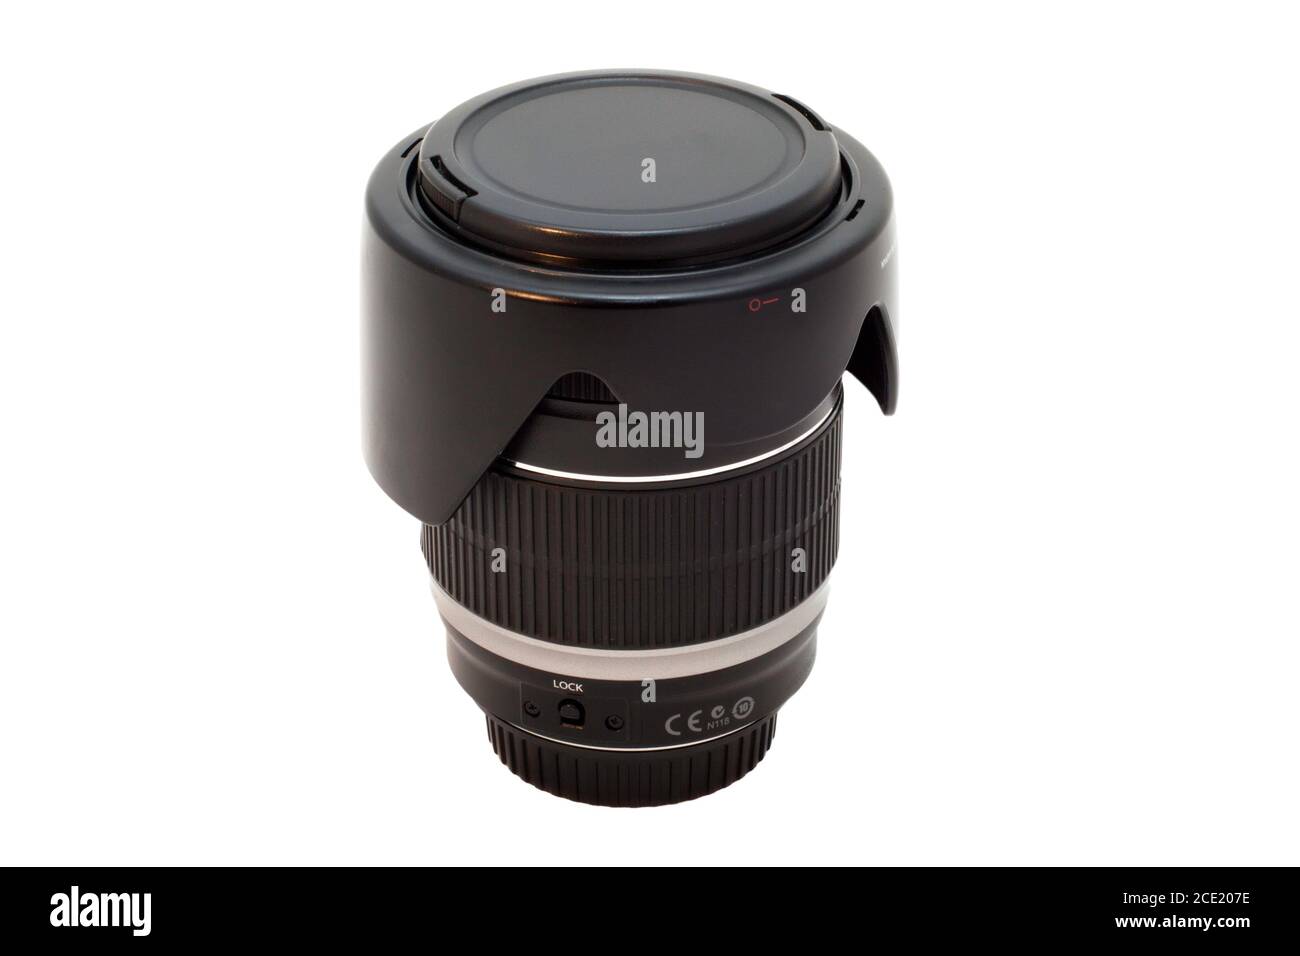 Obiettivo per fotocamere SLR primo piano su sfondo bianco Foto Stock